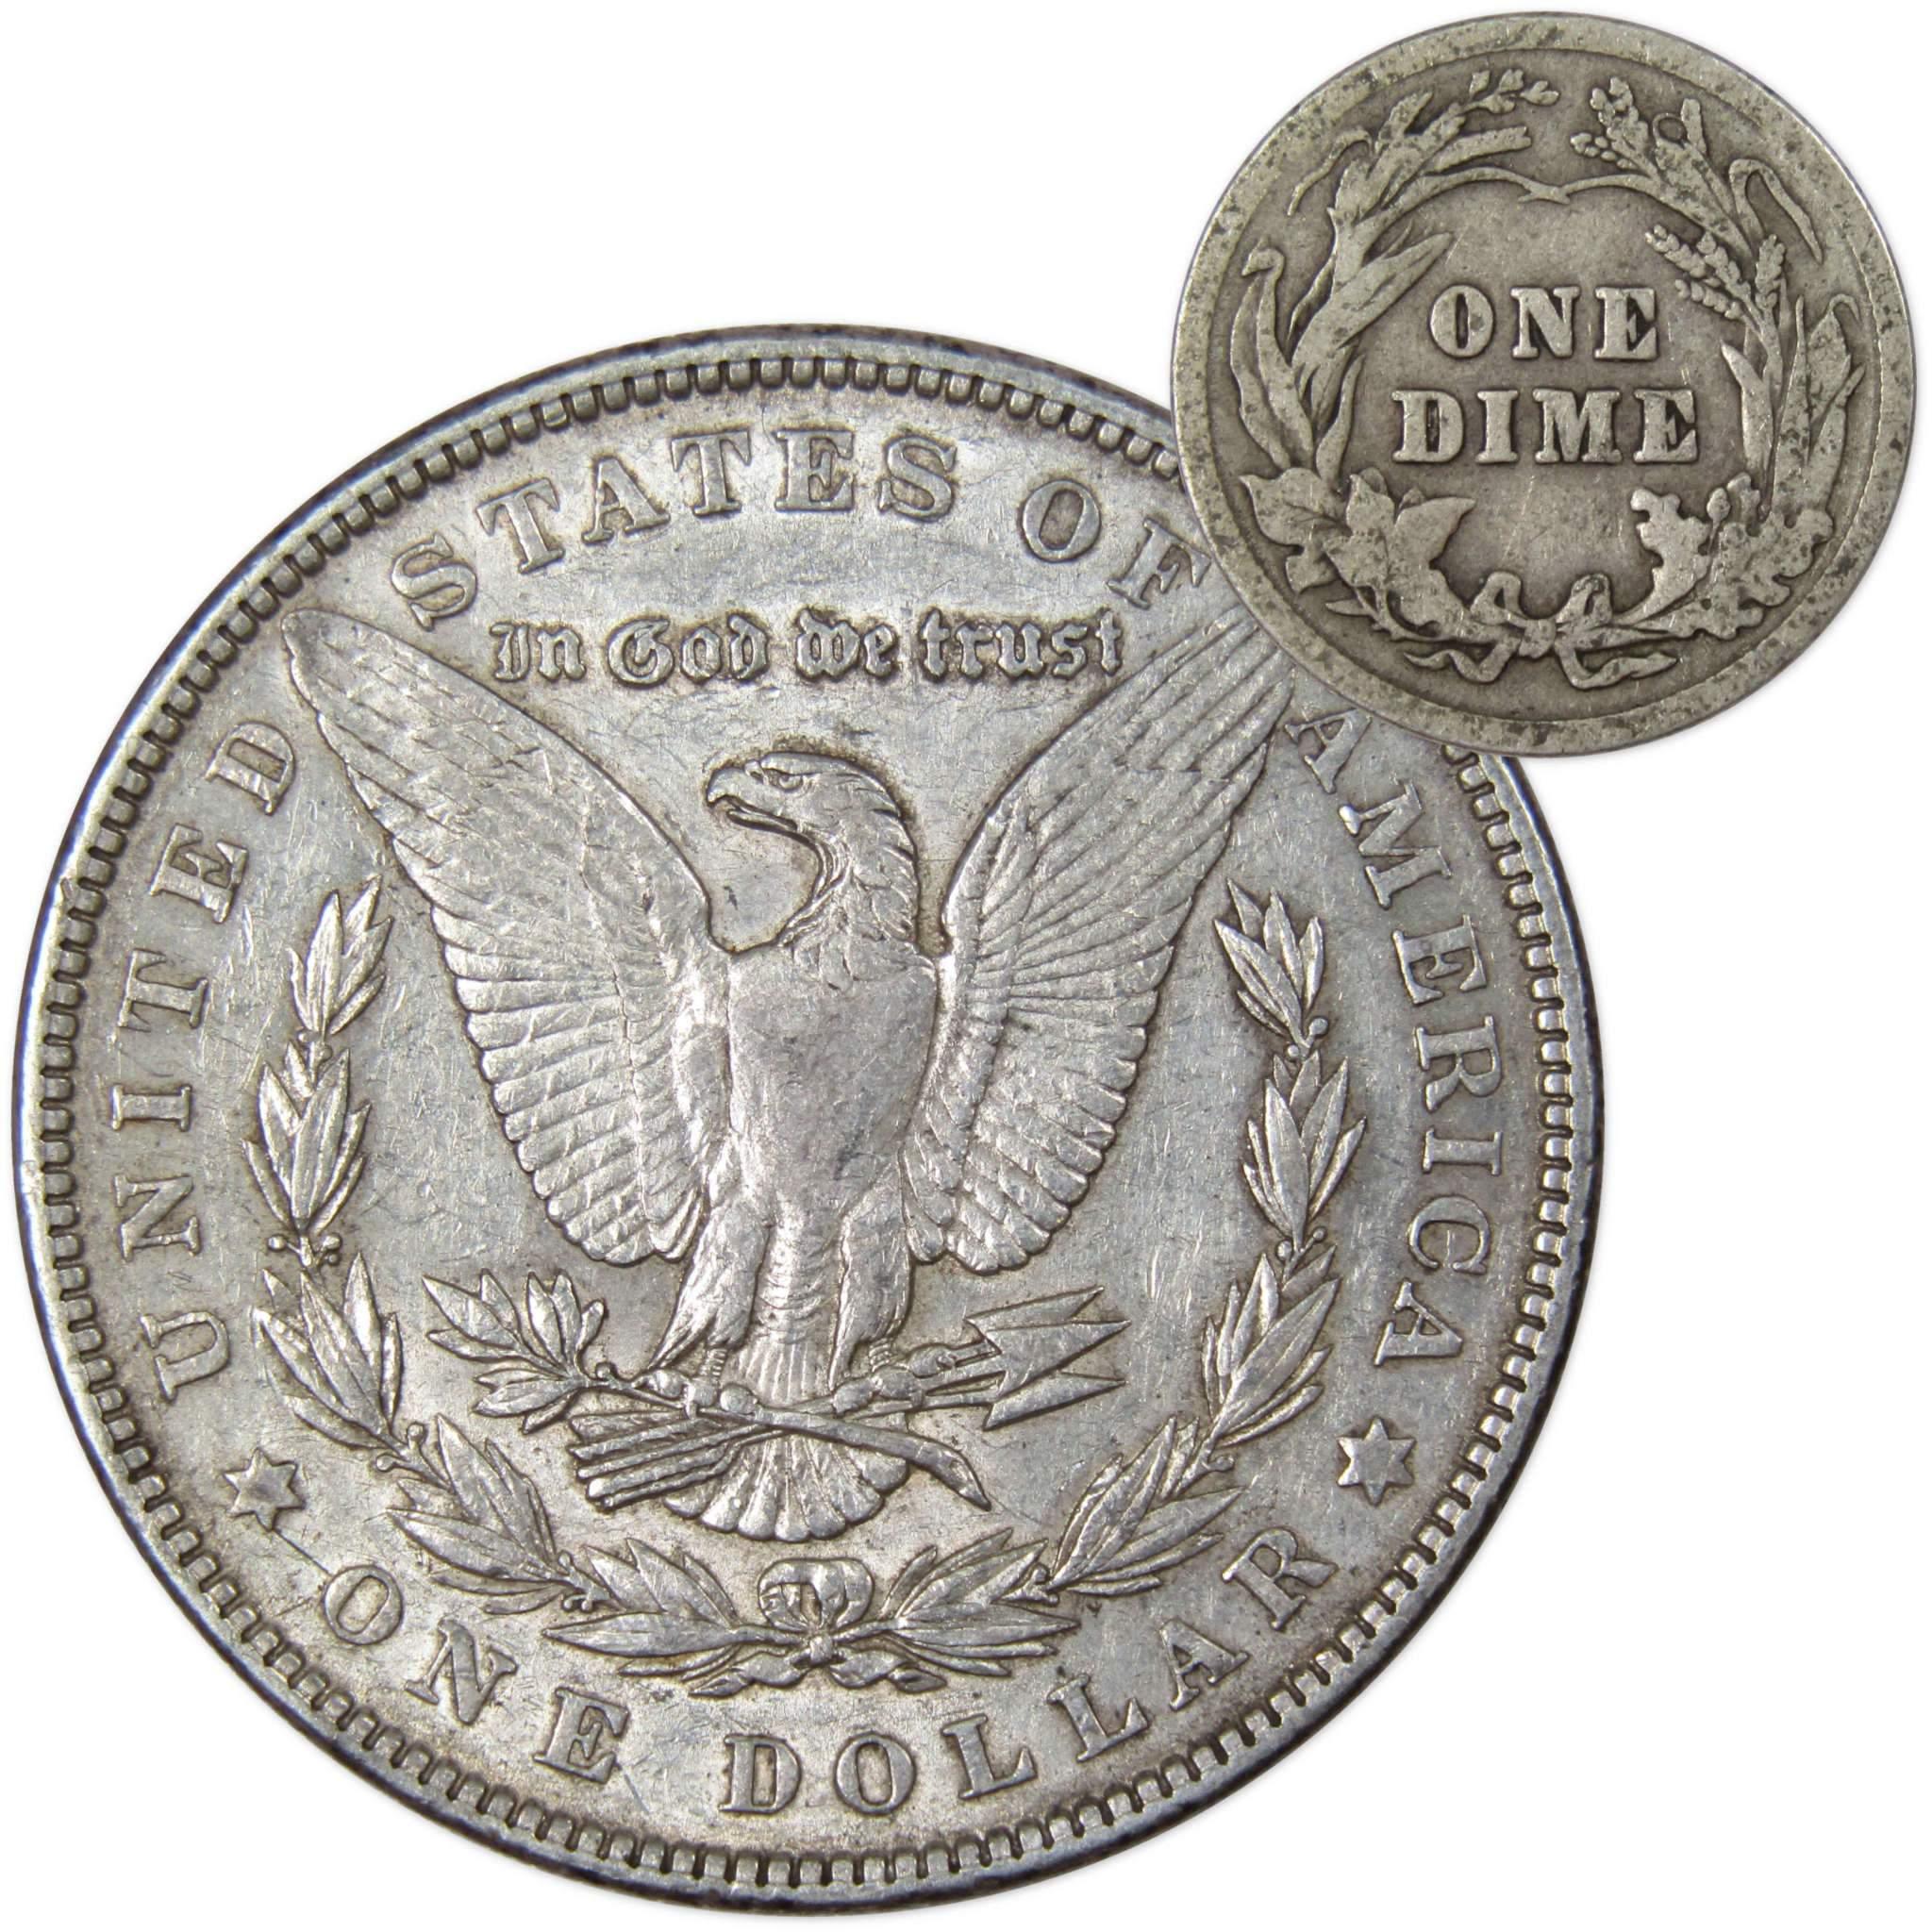 1902 Morgan Dollar XF EF Extremely Fine 90% Silver with 1916 Barber Dime G Good - Morgan coin - Morgan silver dollar - Morgan silver dollar for sale - Profile Coins &amp; Collectibles